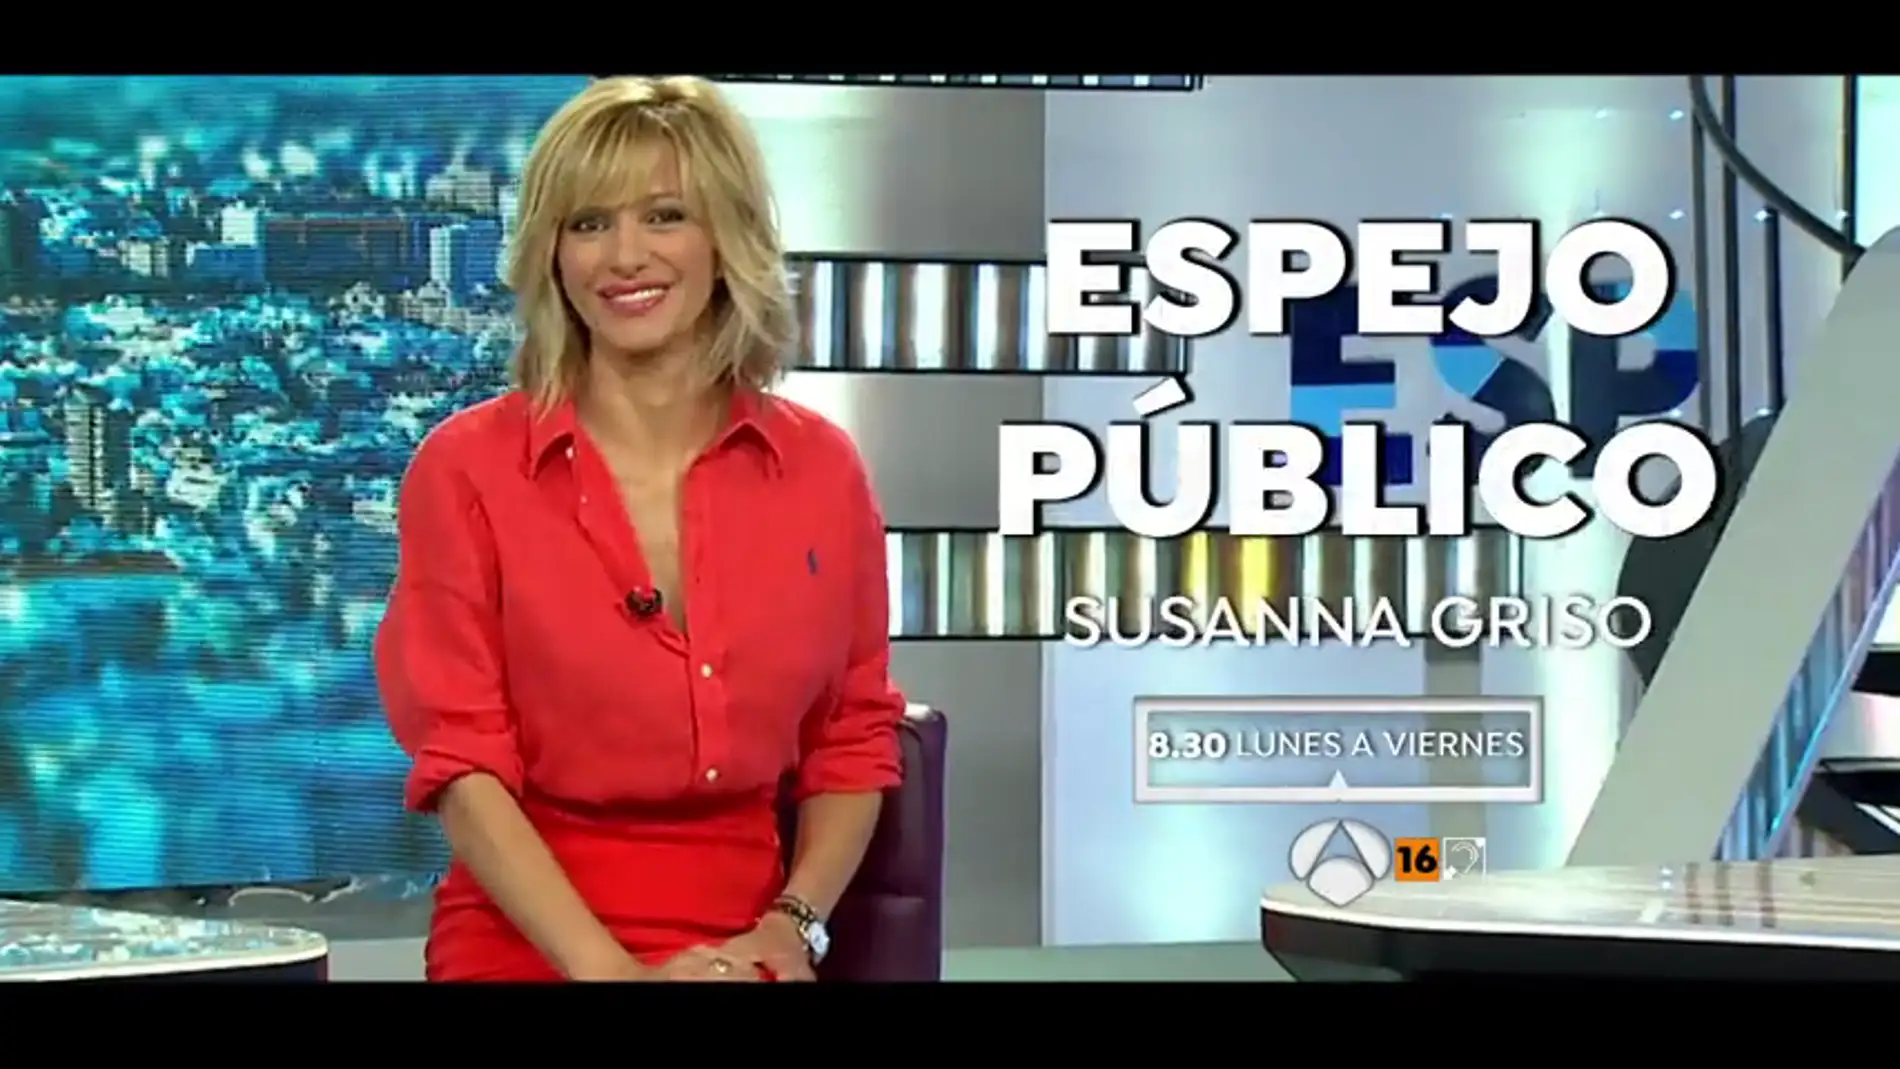 El lunes 3 de septiembre la presentadora Susanna Griso regresa al frente de Espejo Público